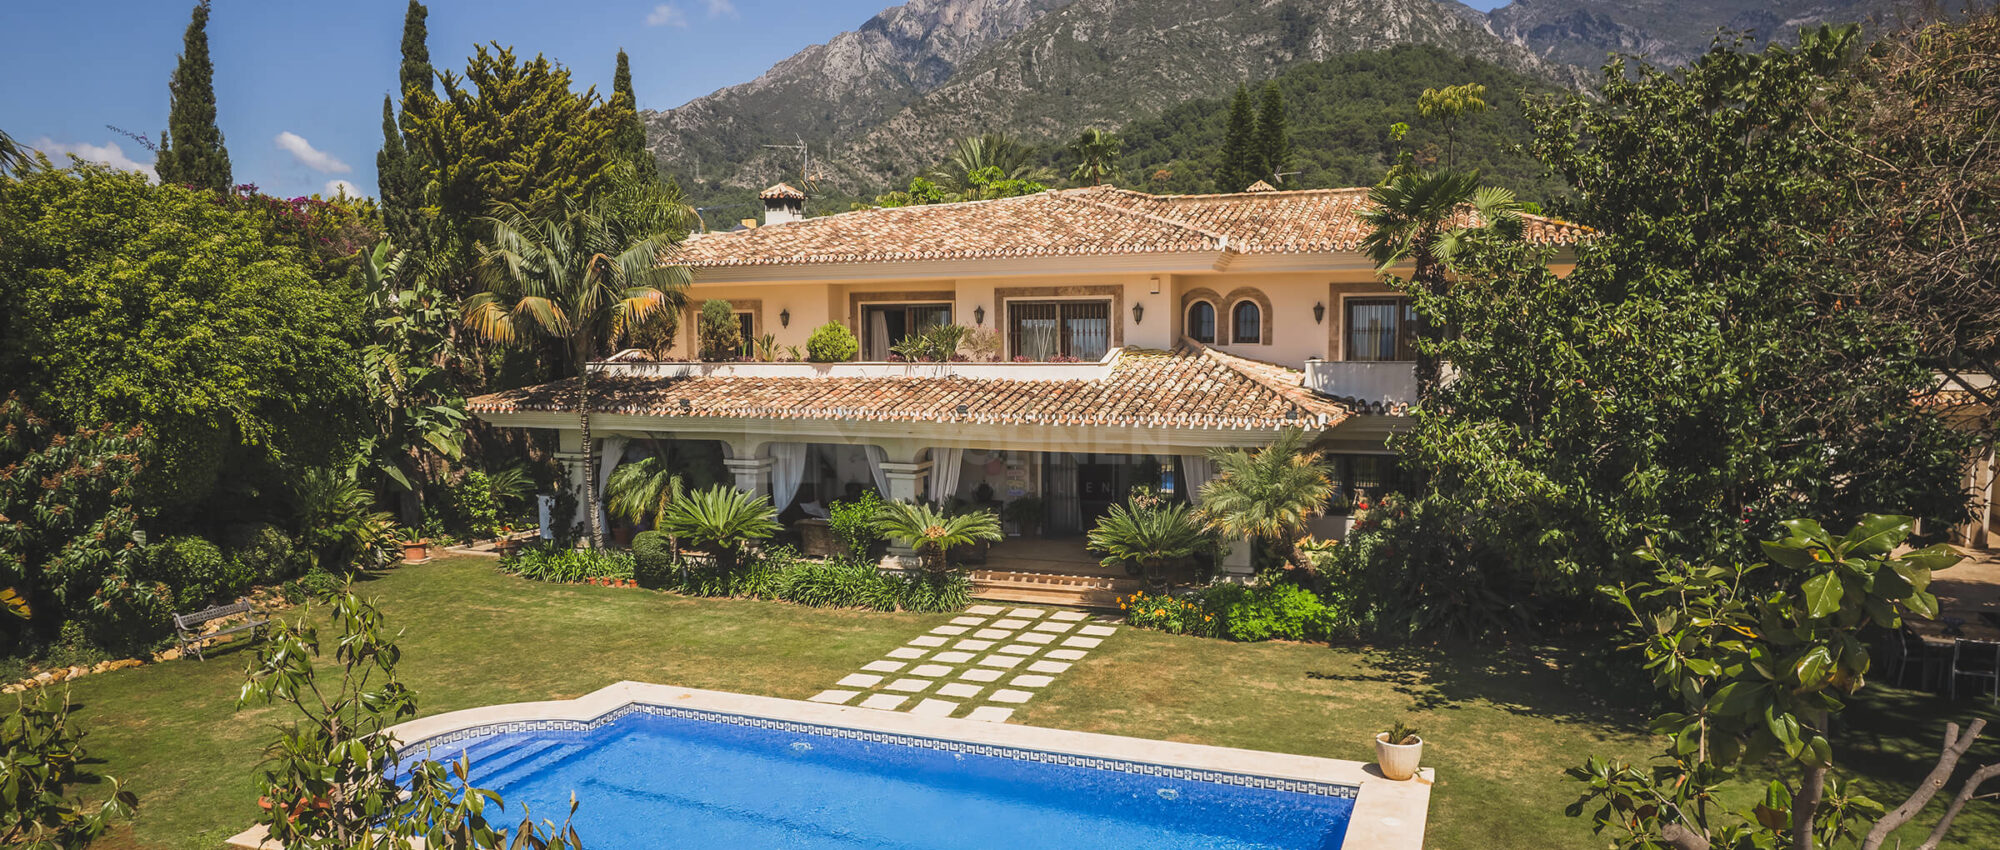 Elegante Familienvilla mit Meerblick nahe dem Zentrum von Marbella